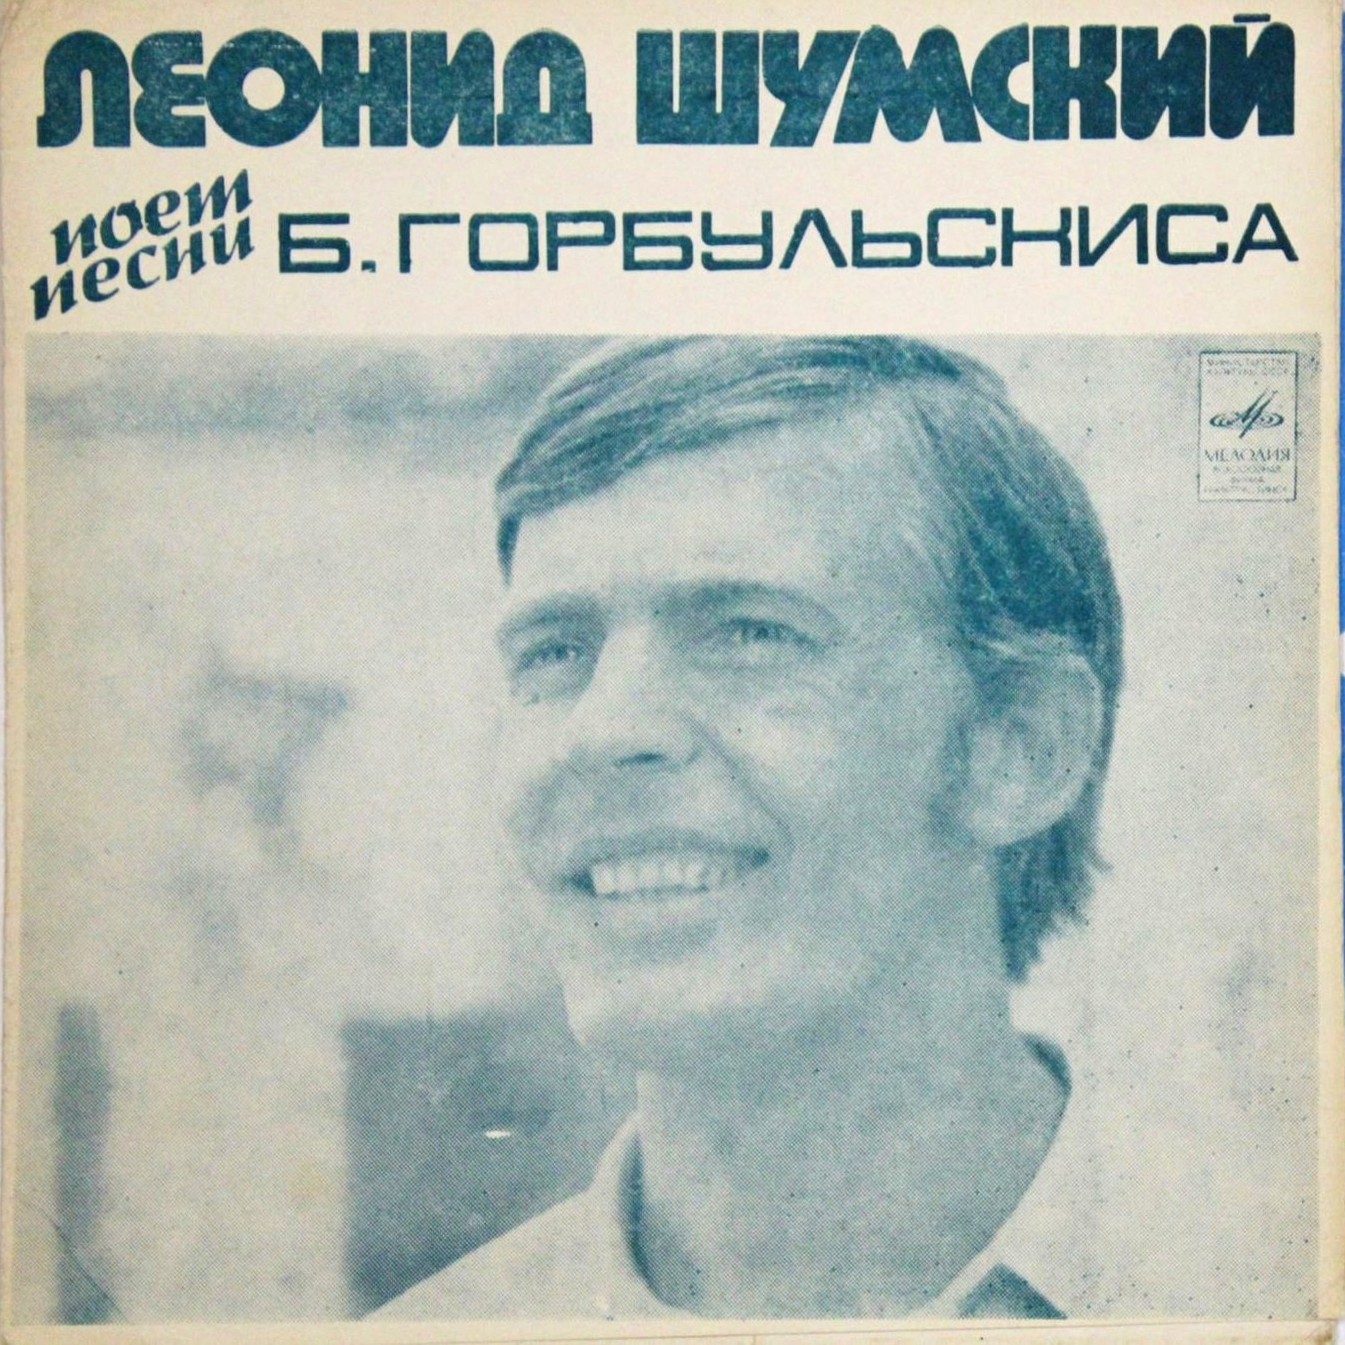 Леонид Шумский ‎поёт песни Б. Горбульскиса